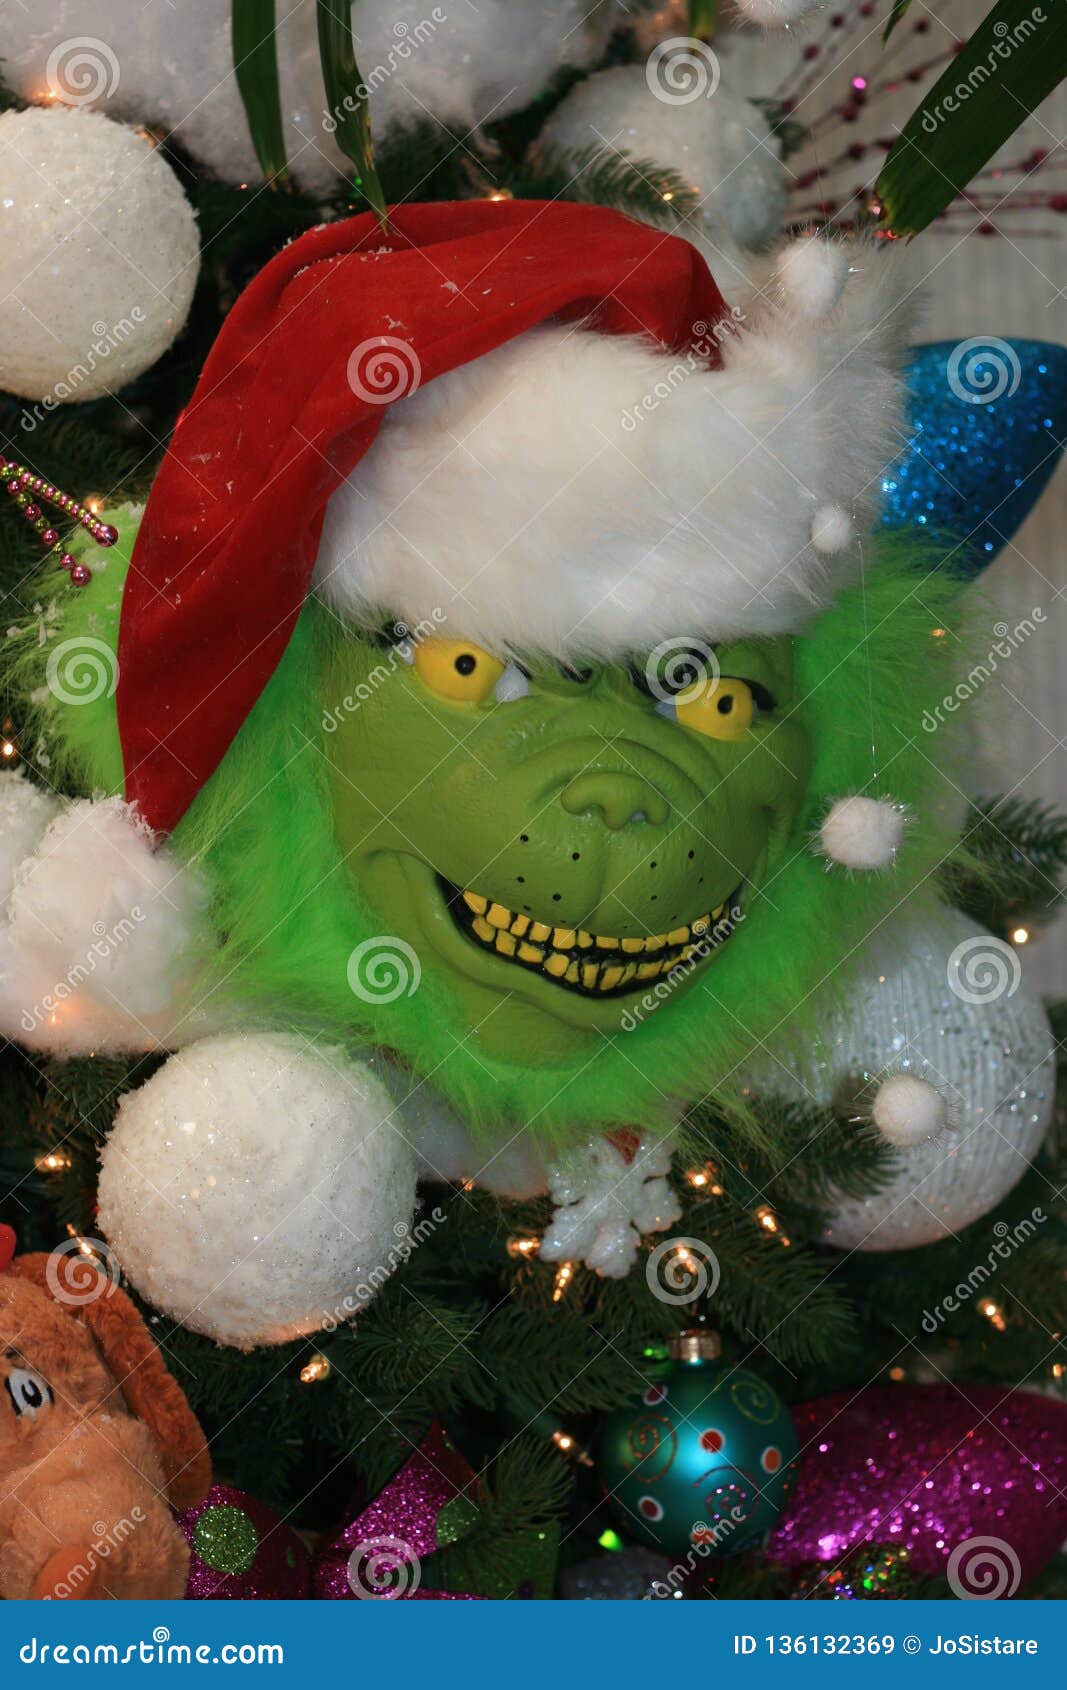 Grinch verre babiole arbre de Noël décoration de Noël 2020 paillettes vert Caractères